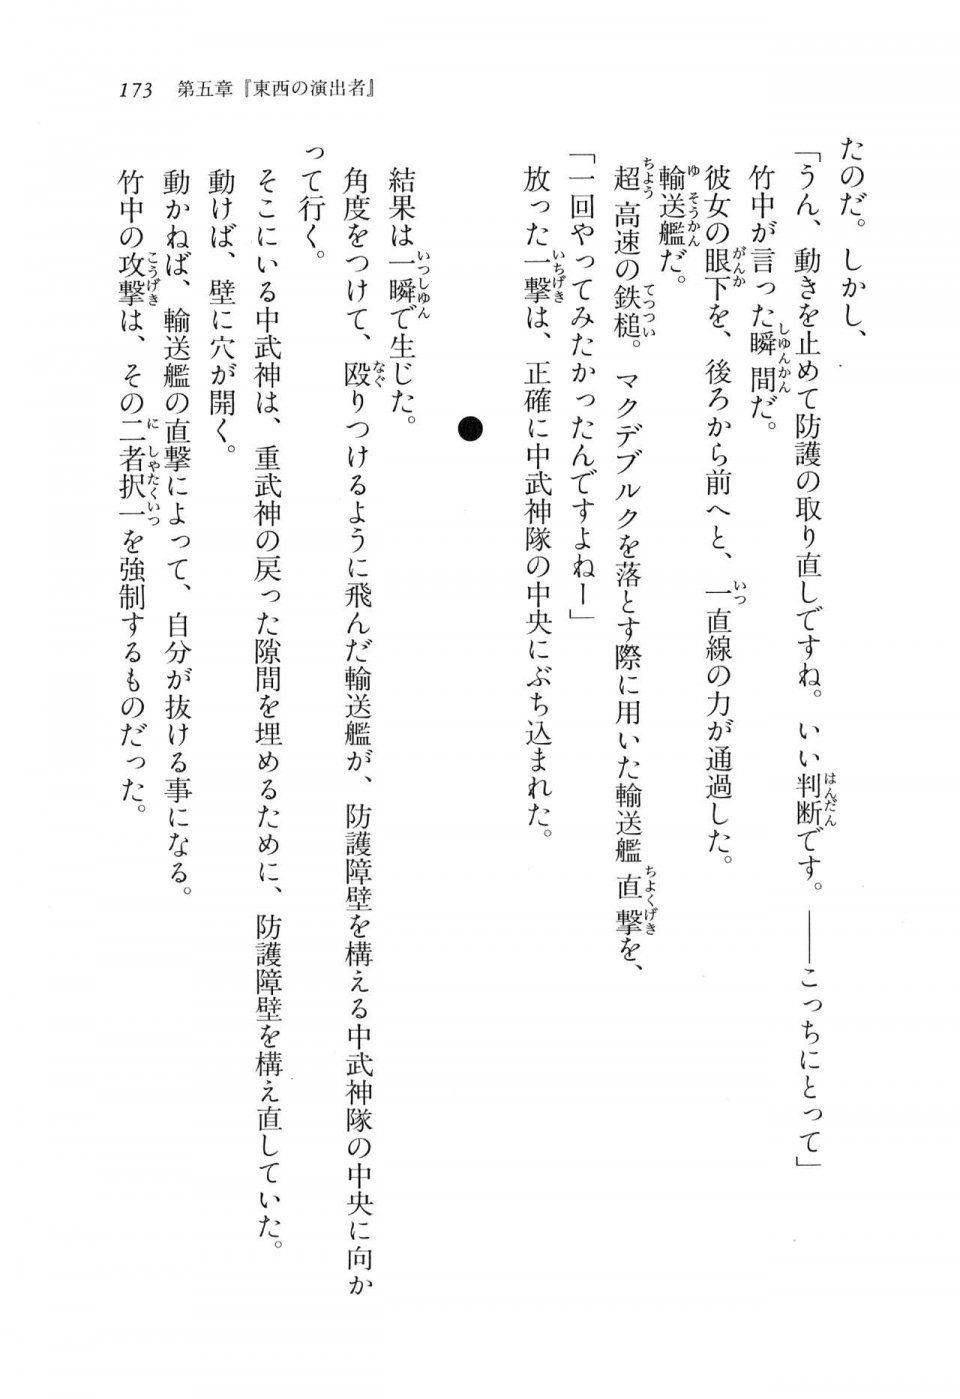 Kyoukai Senjou no Horizon LN Vol 11(5A) - Photo #173